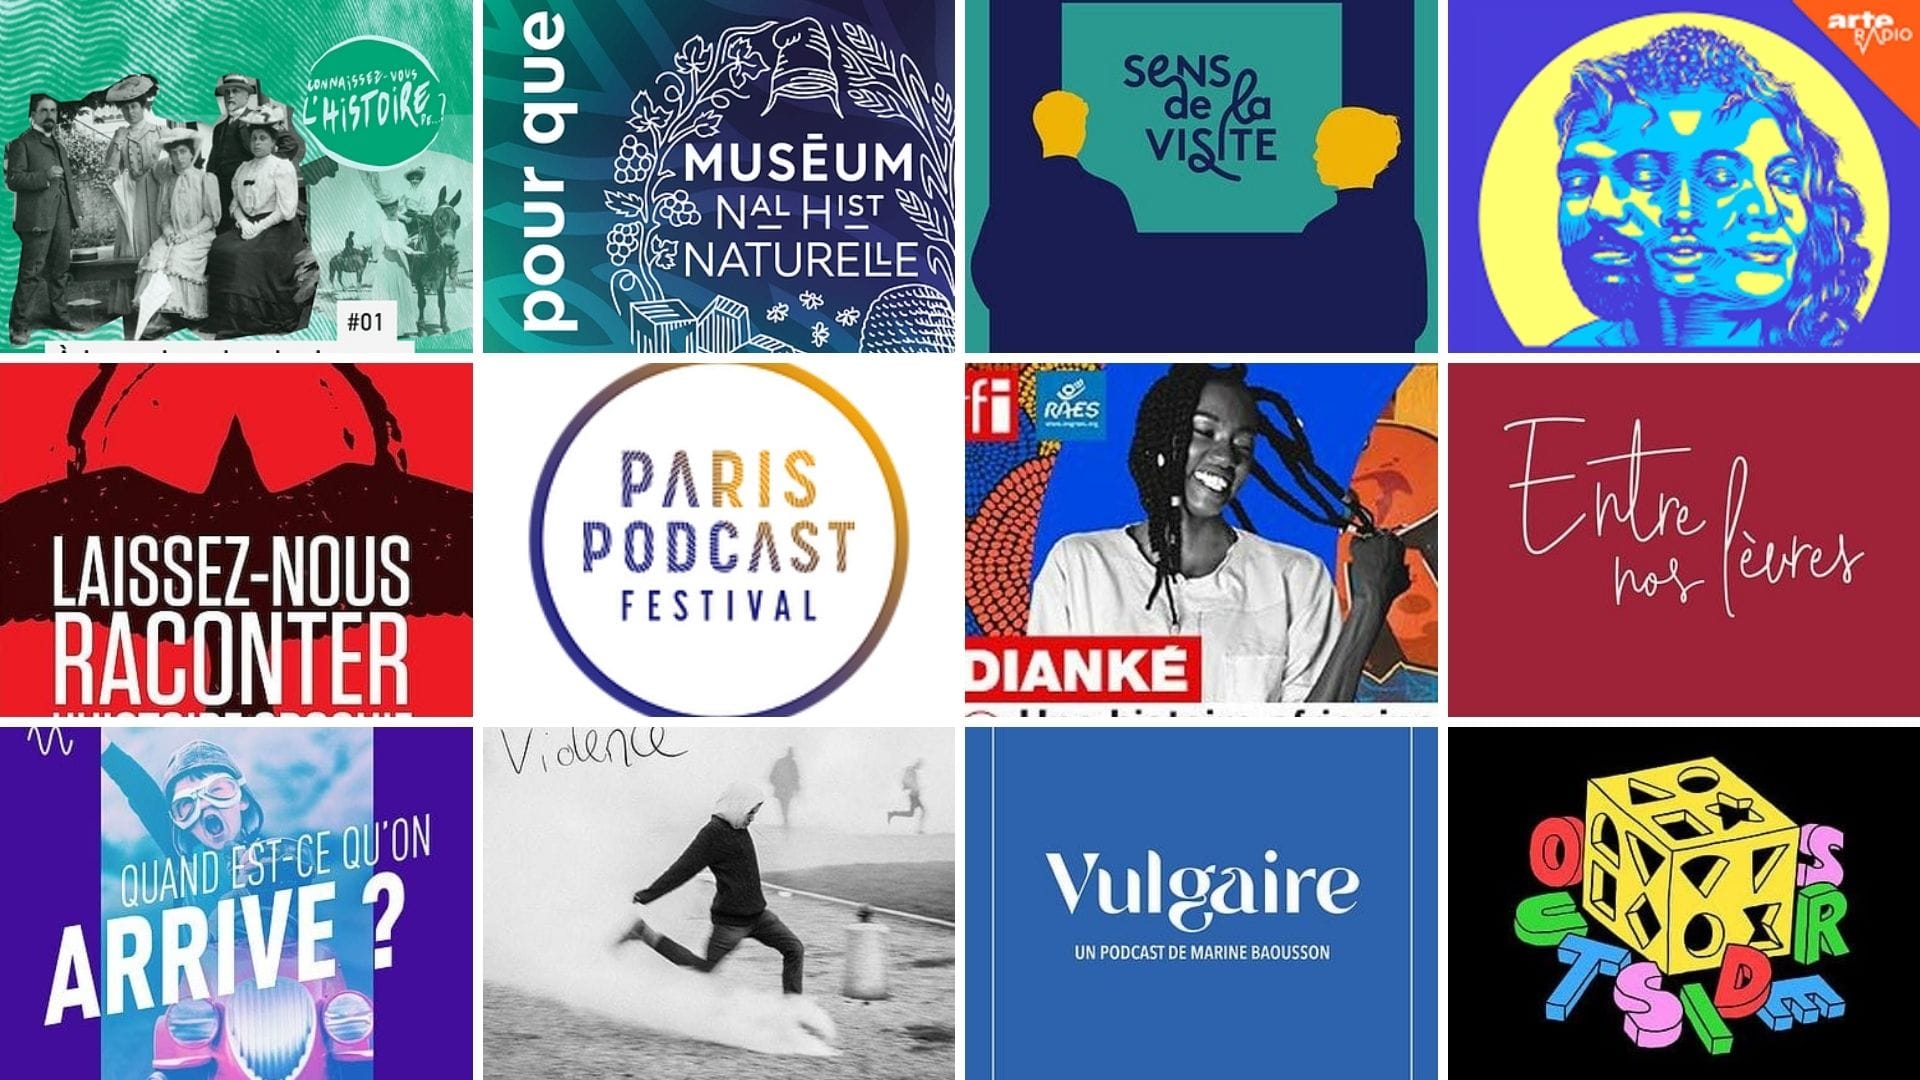 Paris Podcast Festival 2020 palmarès images